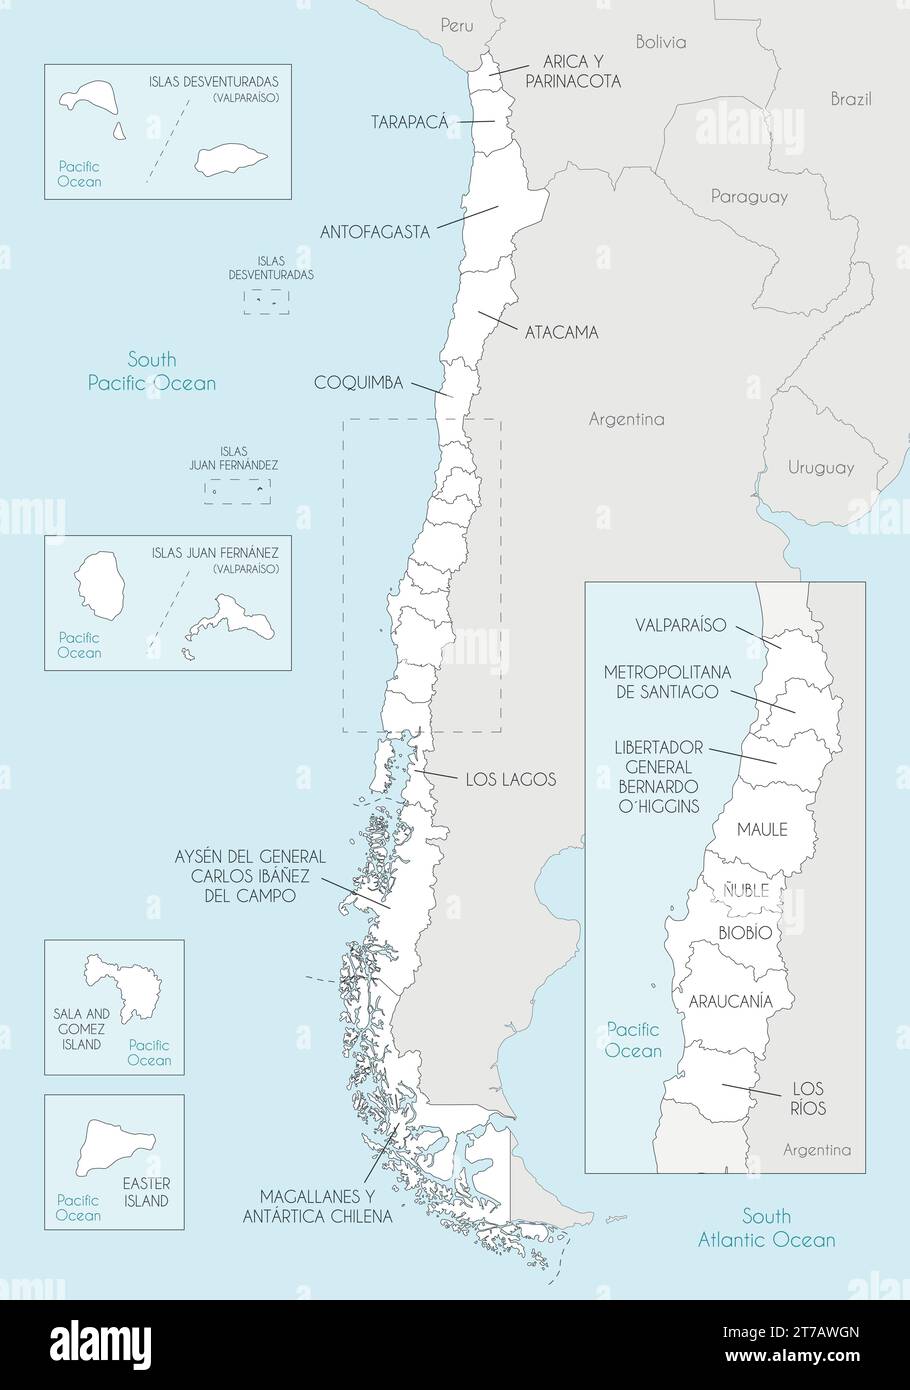 Carte vectorielle du Chili avec les régions et territoires et les divisions administratives, et les pays et territoires voisins. Modifiable et clairement labele Illustration de Vecteur